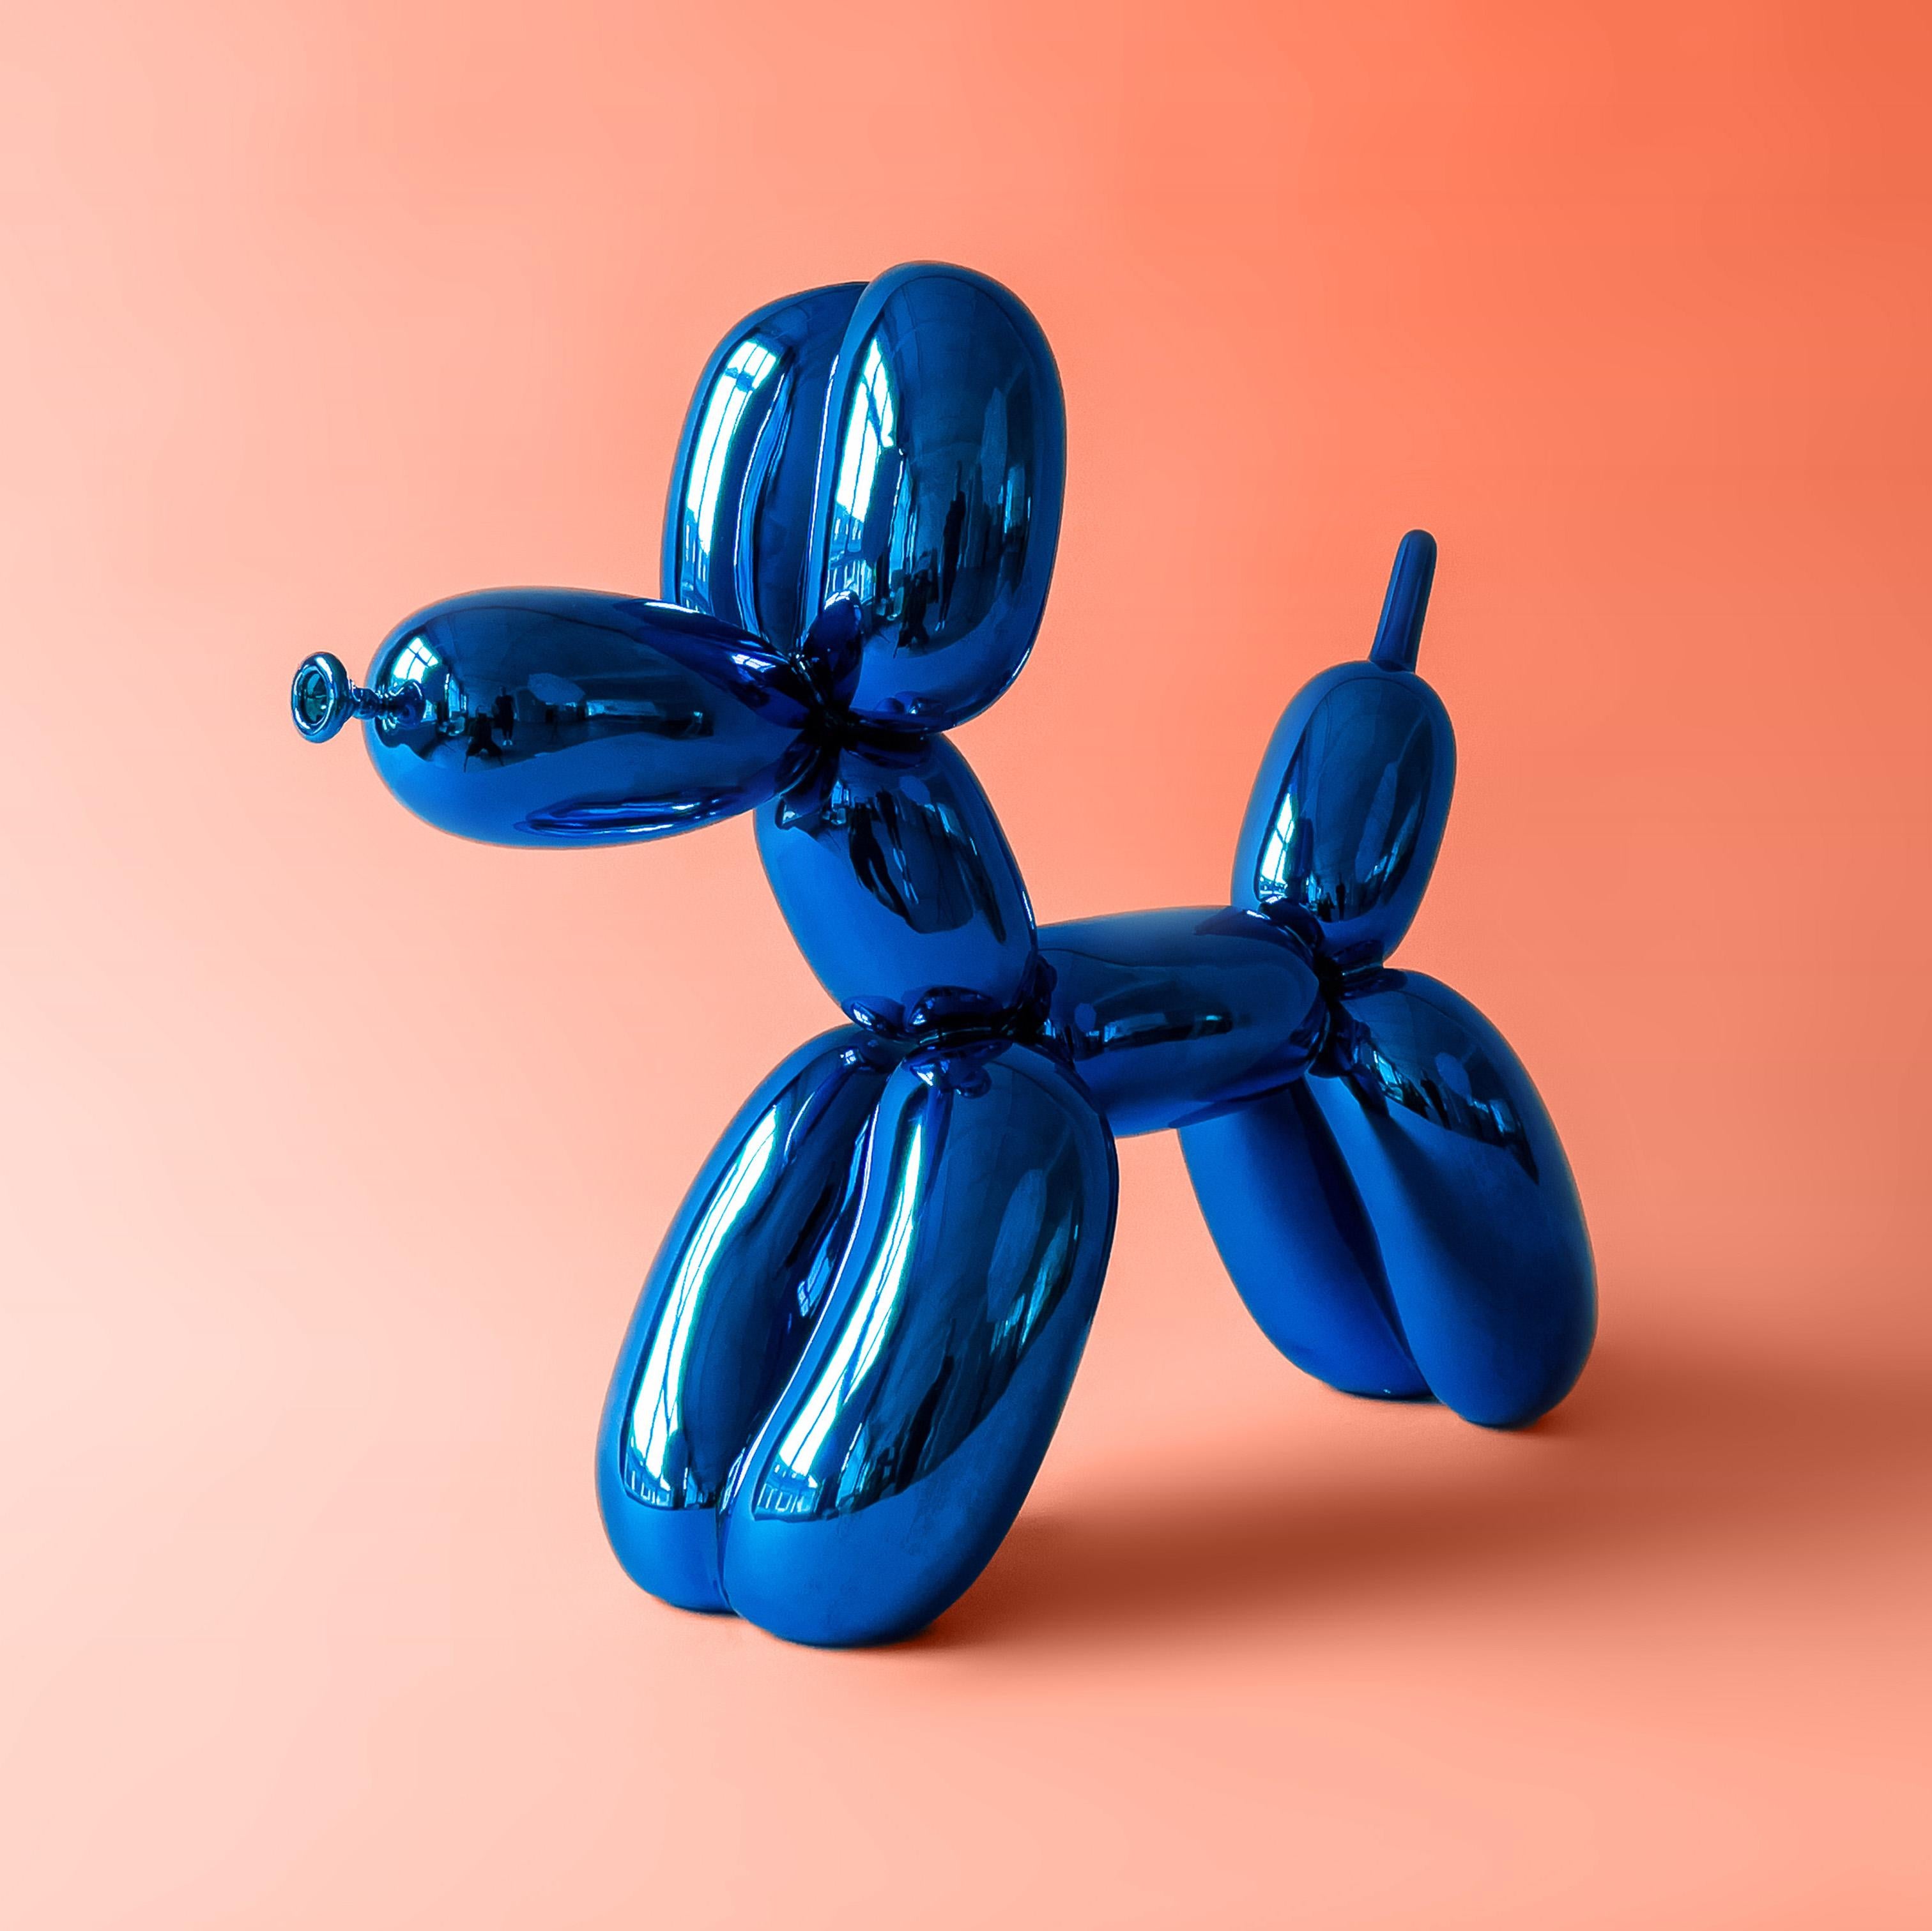 Dans les mains d'Icone, même les objets les plus familiers et les plus quotidiens transcendent la banalité pour devenir de véritables icônes manifestant l'essence de la culture populaire américaine.

Jeff Koons
Balloon Dog (Blue) - Jeff Koons, 21e